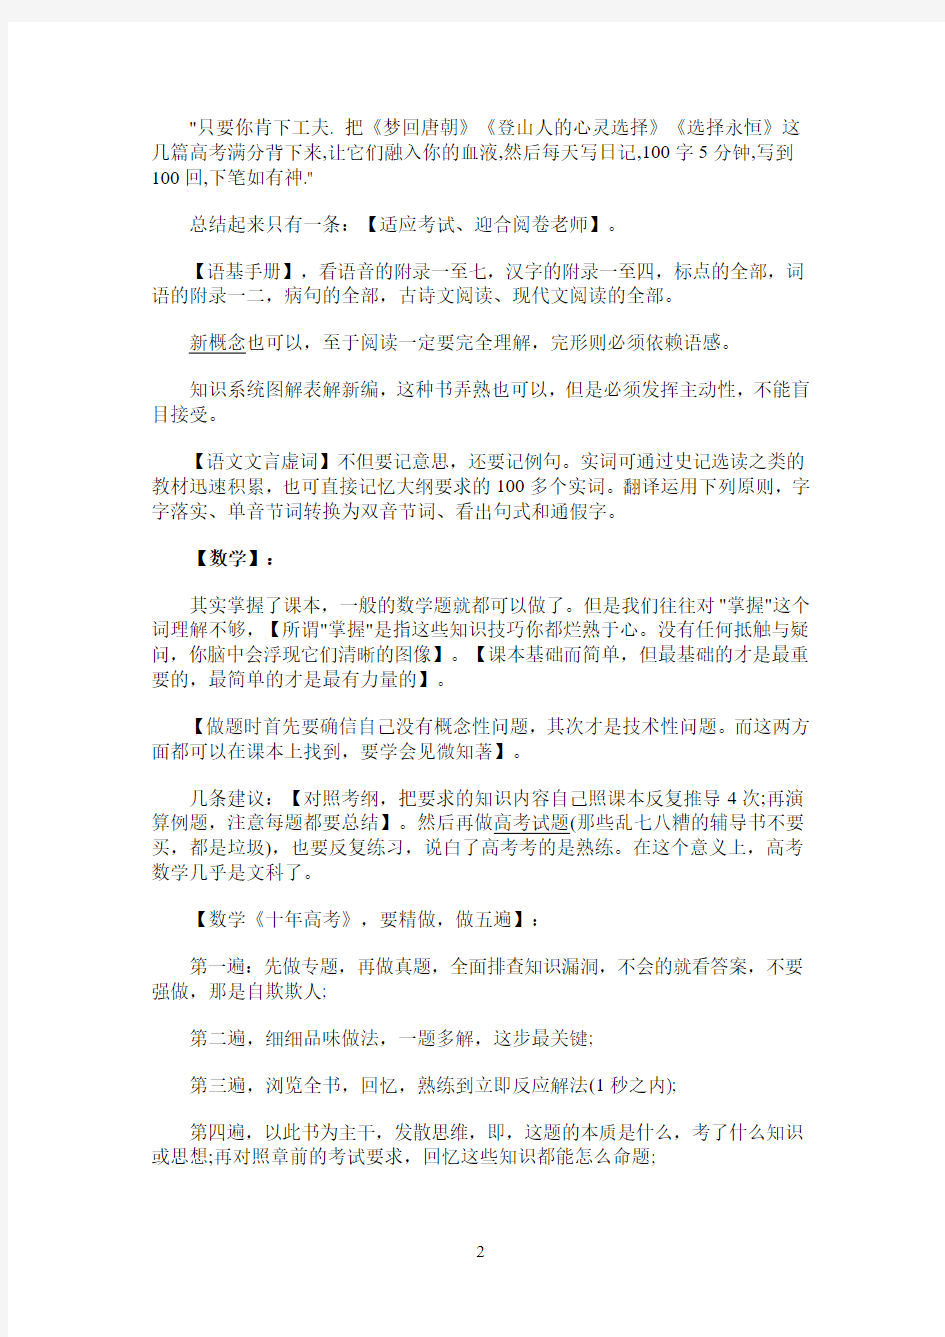 一位清华学生的完美学习建议 Microsoft Word 文档